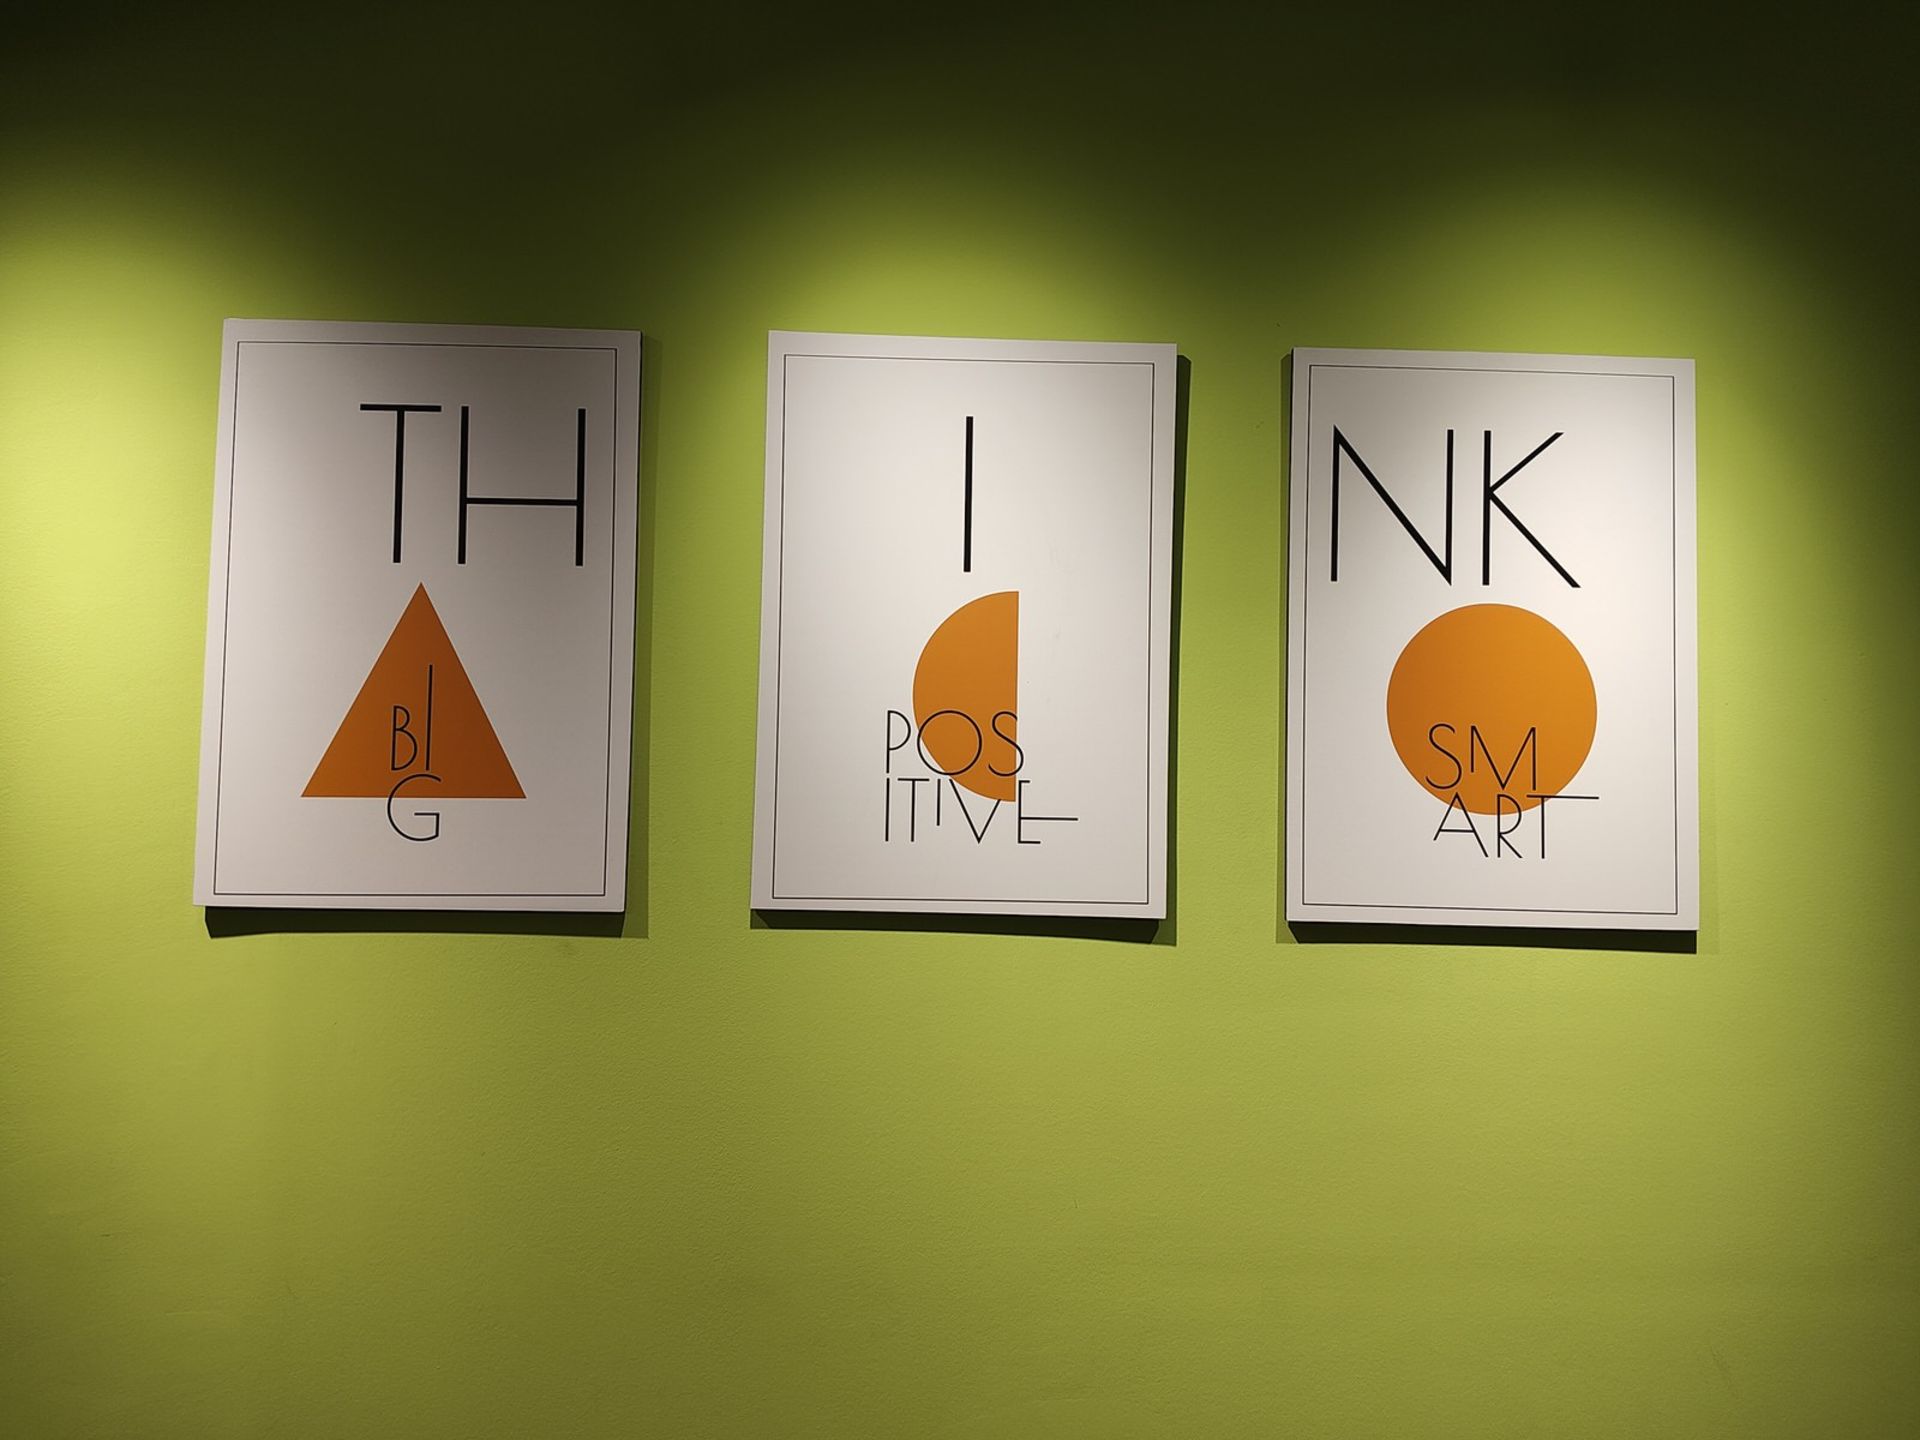 نمونه عکس ریزر ۴۰ اولترا از چند تابلو با طراحی مینیمال روی دیواری سبز رنگ در محیط داخلی یک دفتر کار